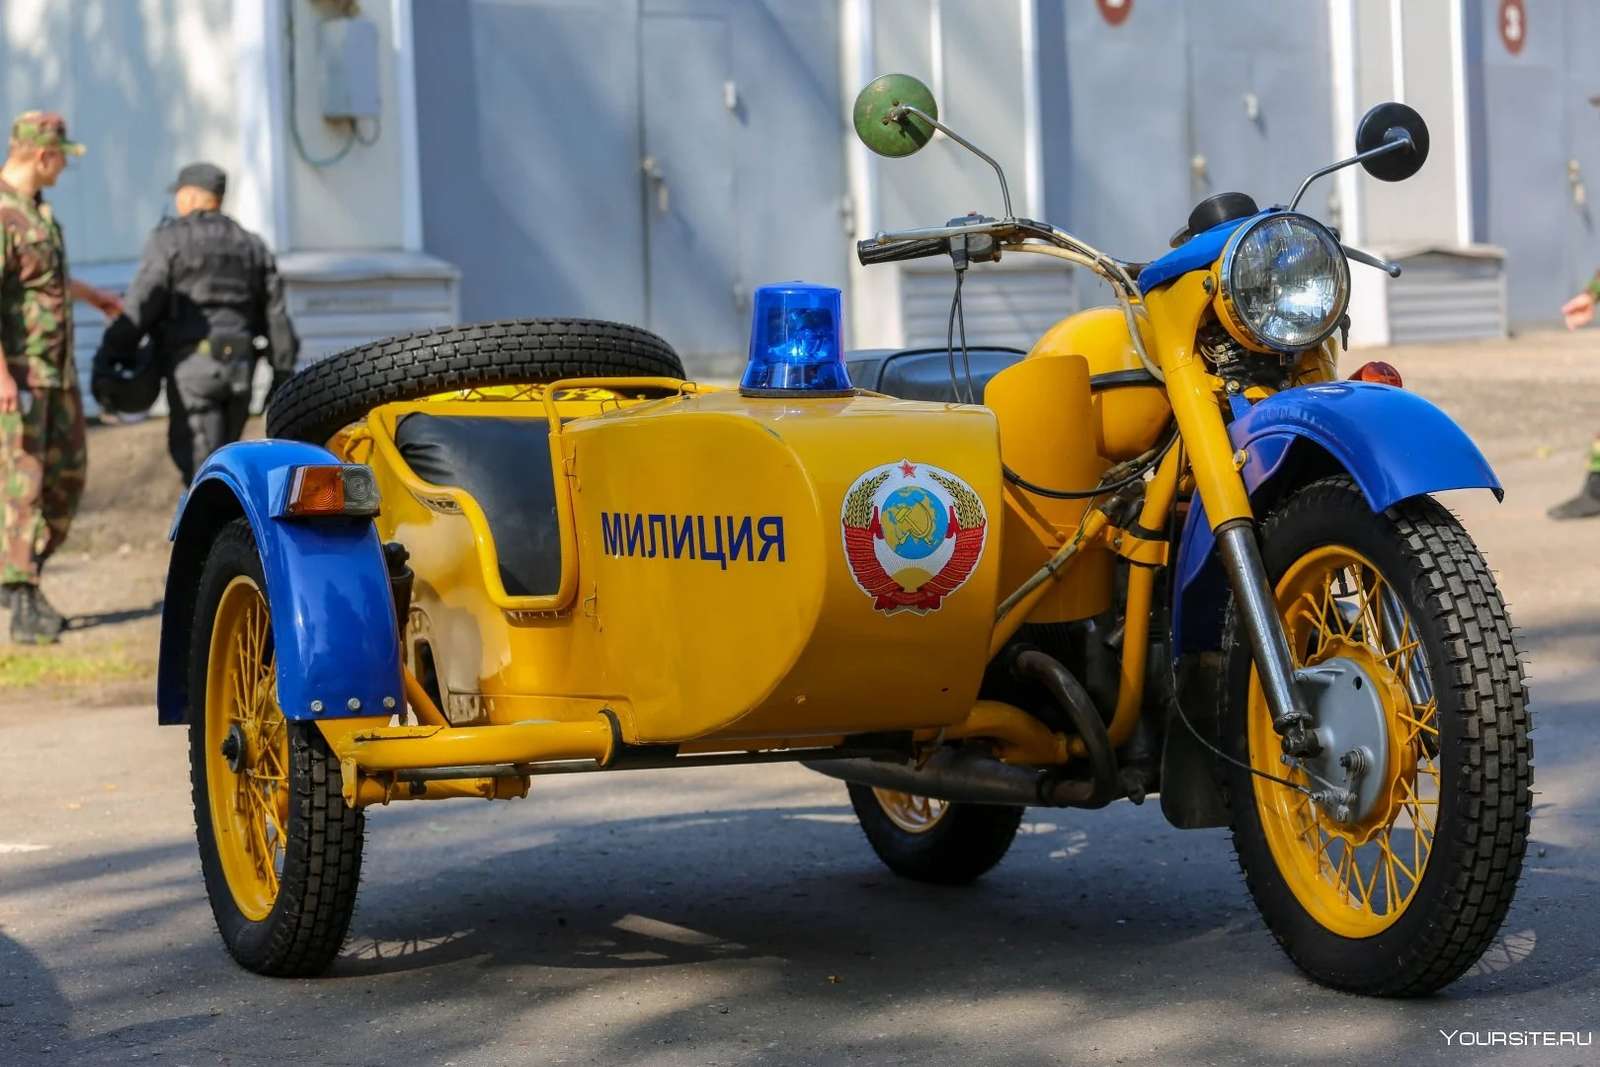 Ural polismotorcykel pussel på nätet